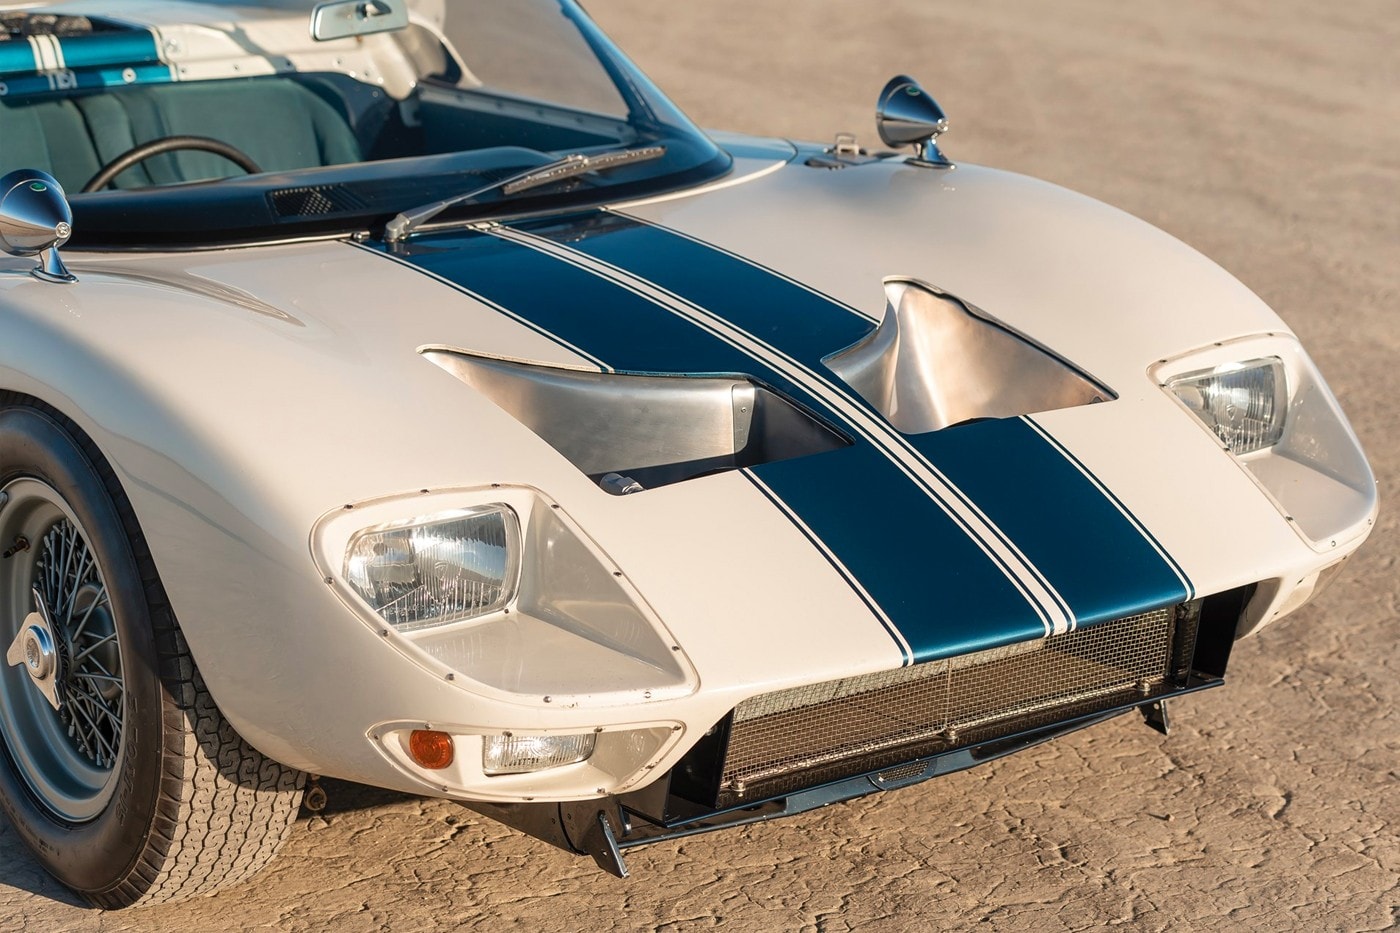 全球唯一 1965 年樣式 Ford GT40 Roadster 原型車即將展開拍賣